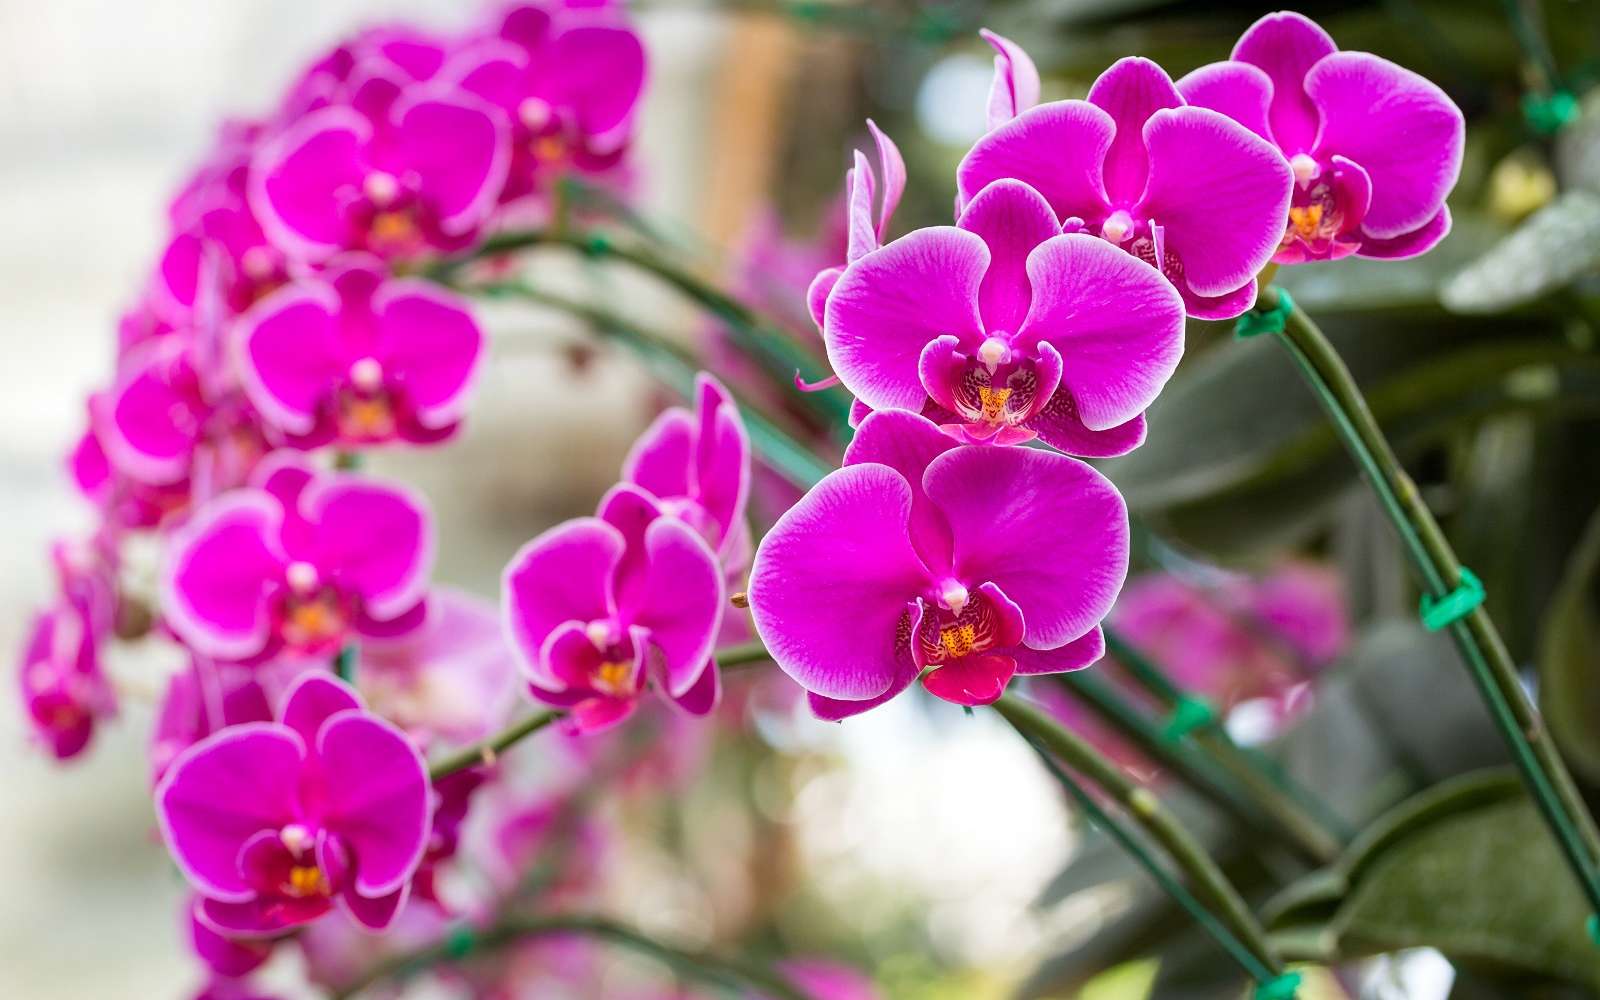 Magnifique phalaenopsis, une orchidée facile à vivre. © aopsan, Adobe Stock